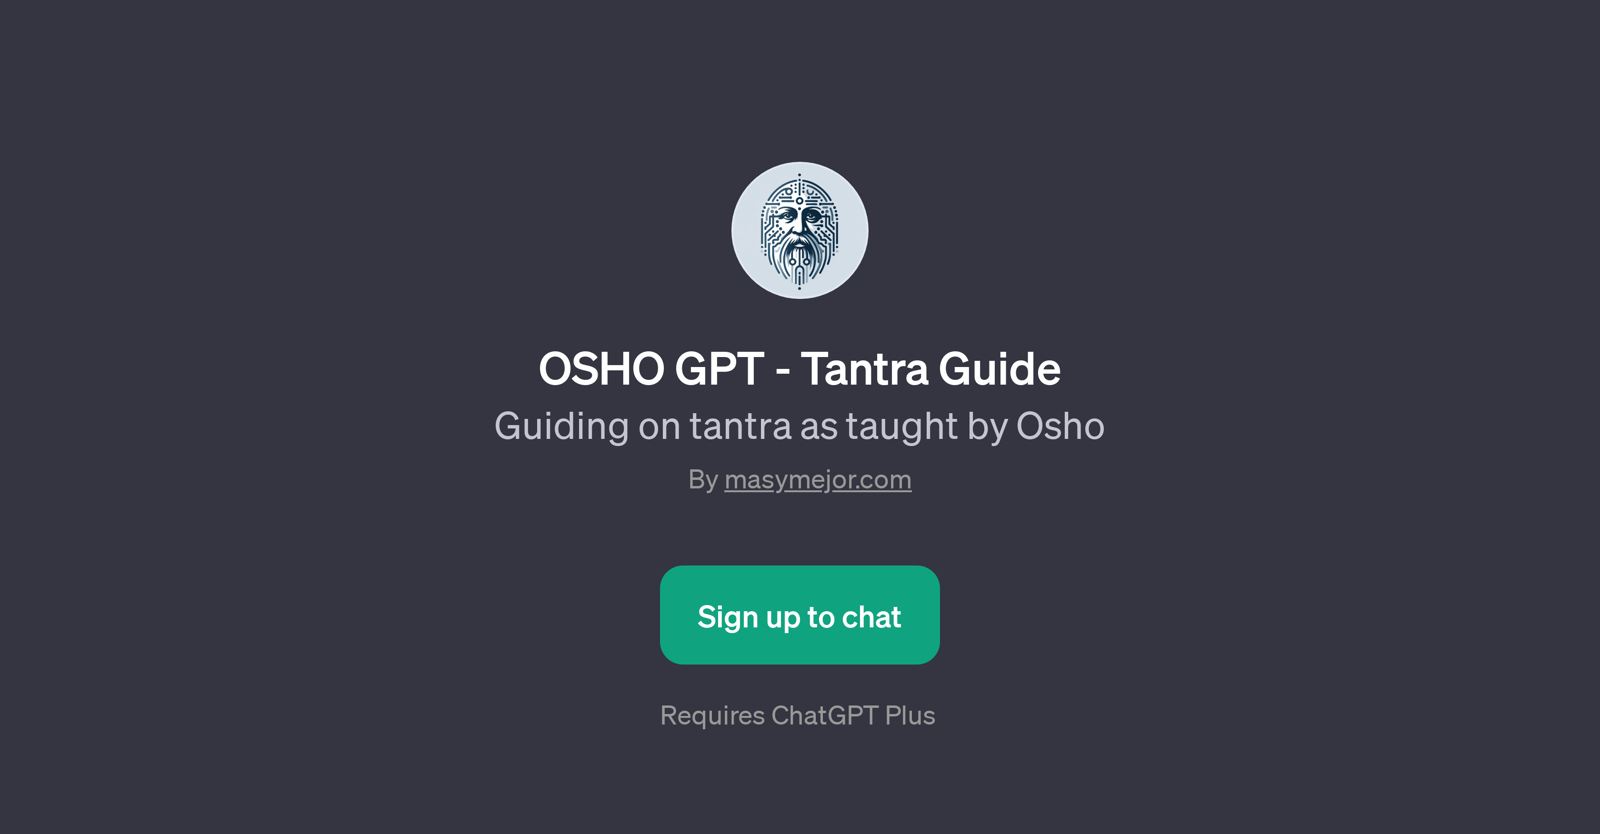 OSHO GPT - Tantra Guide website